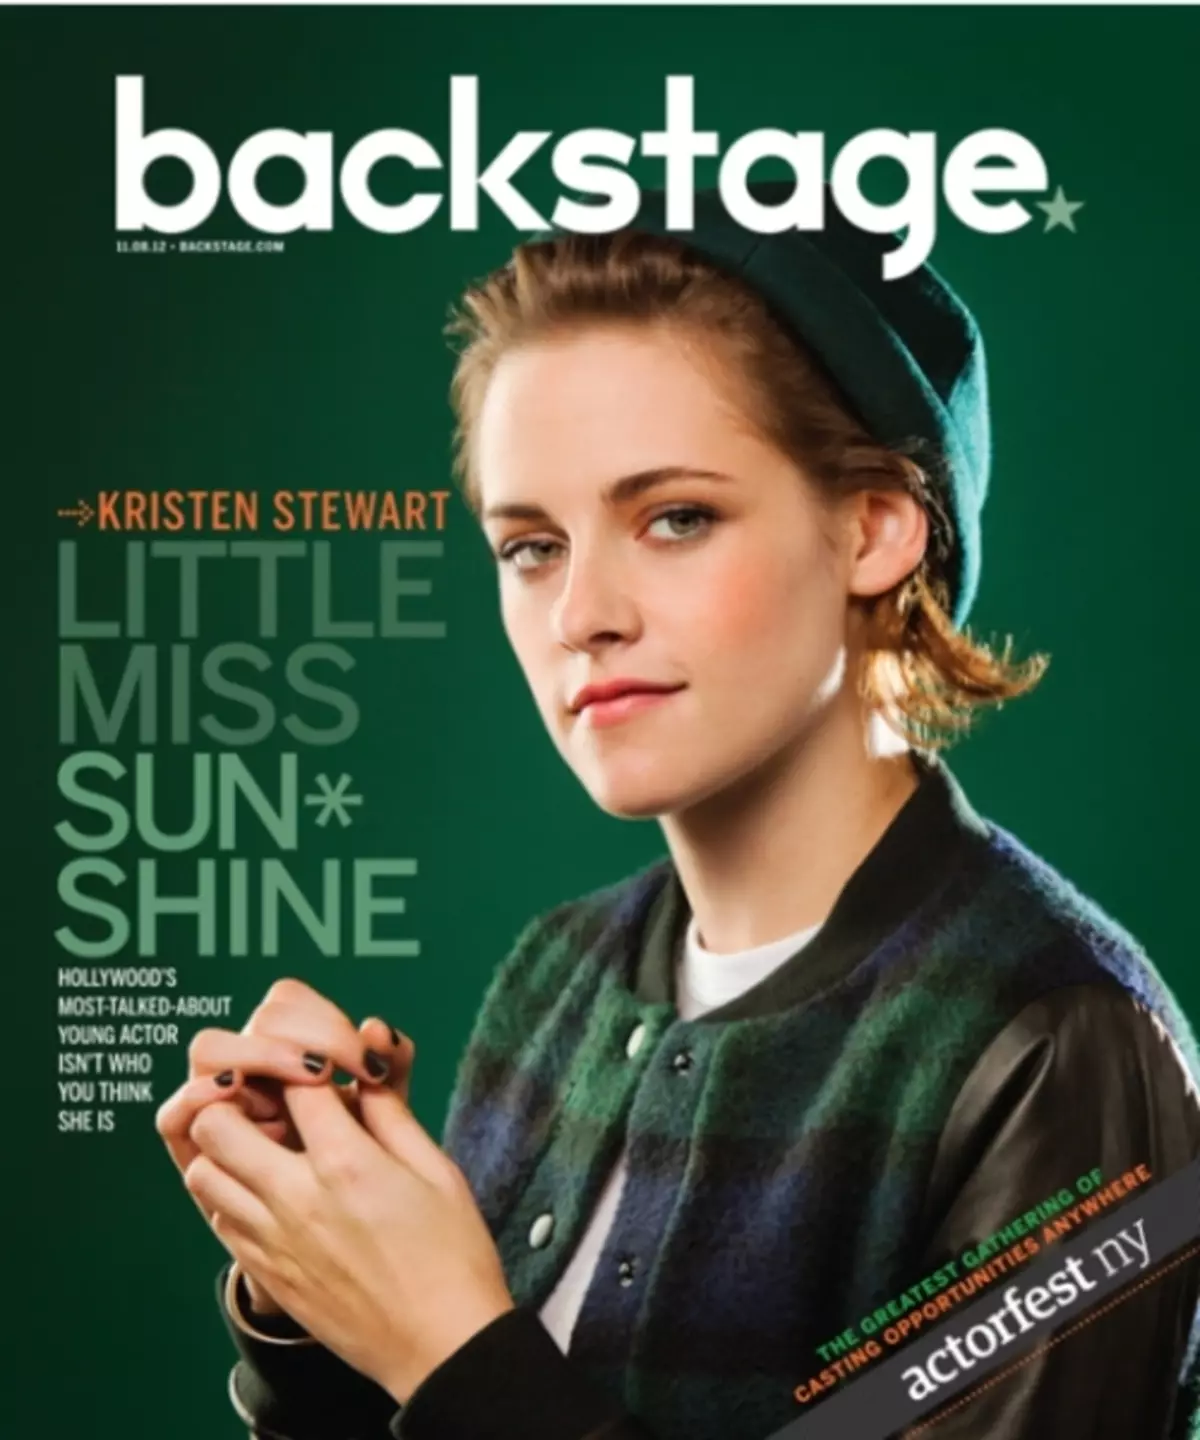 کریستن استوارت در مجله پشت صحنه. نوامبر 2012